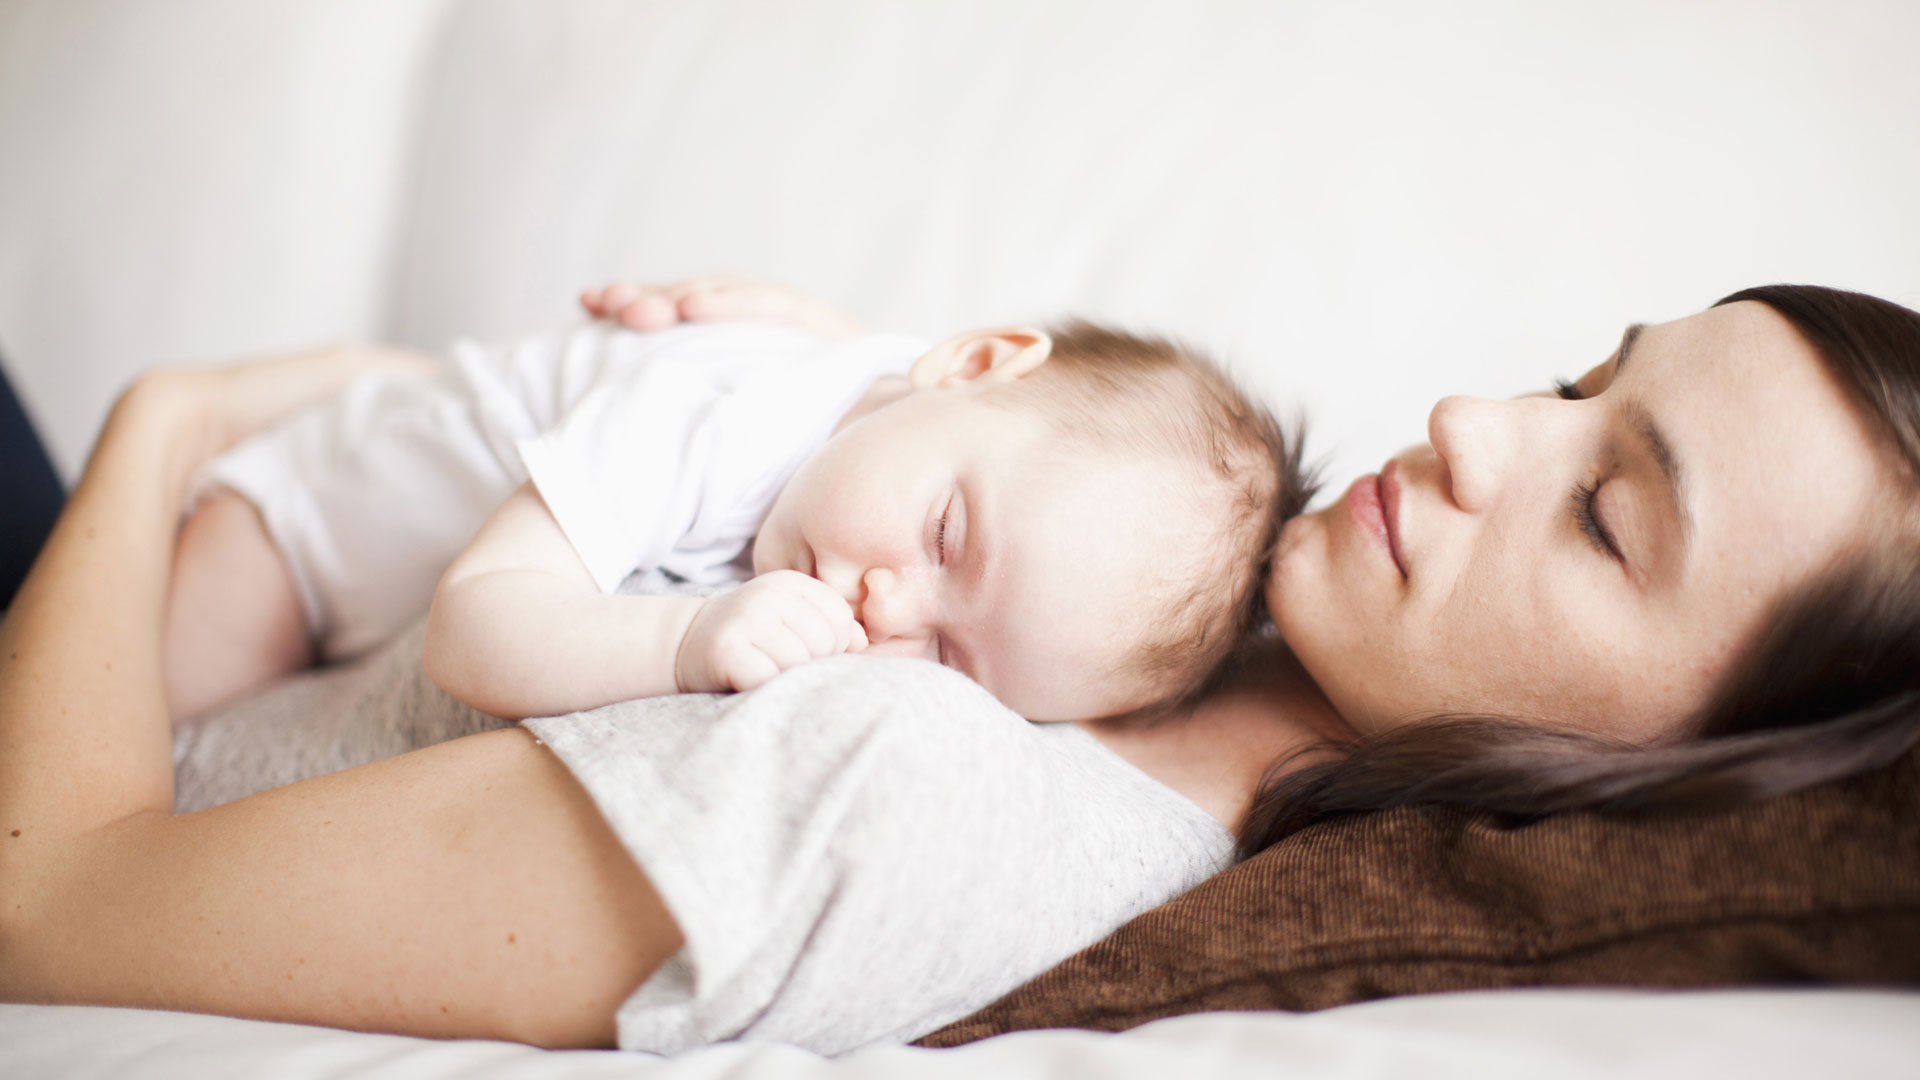 Videns infantem masculum in somnio pro muliere nupta